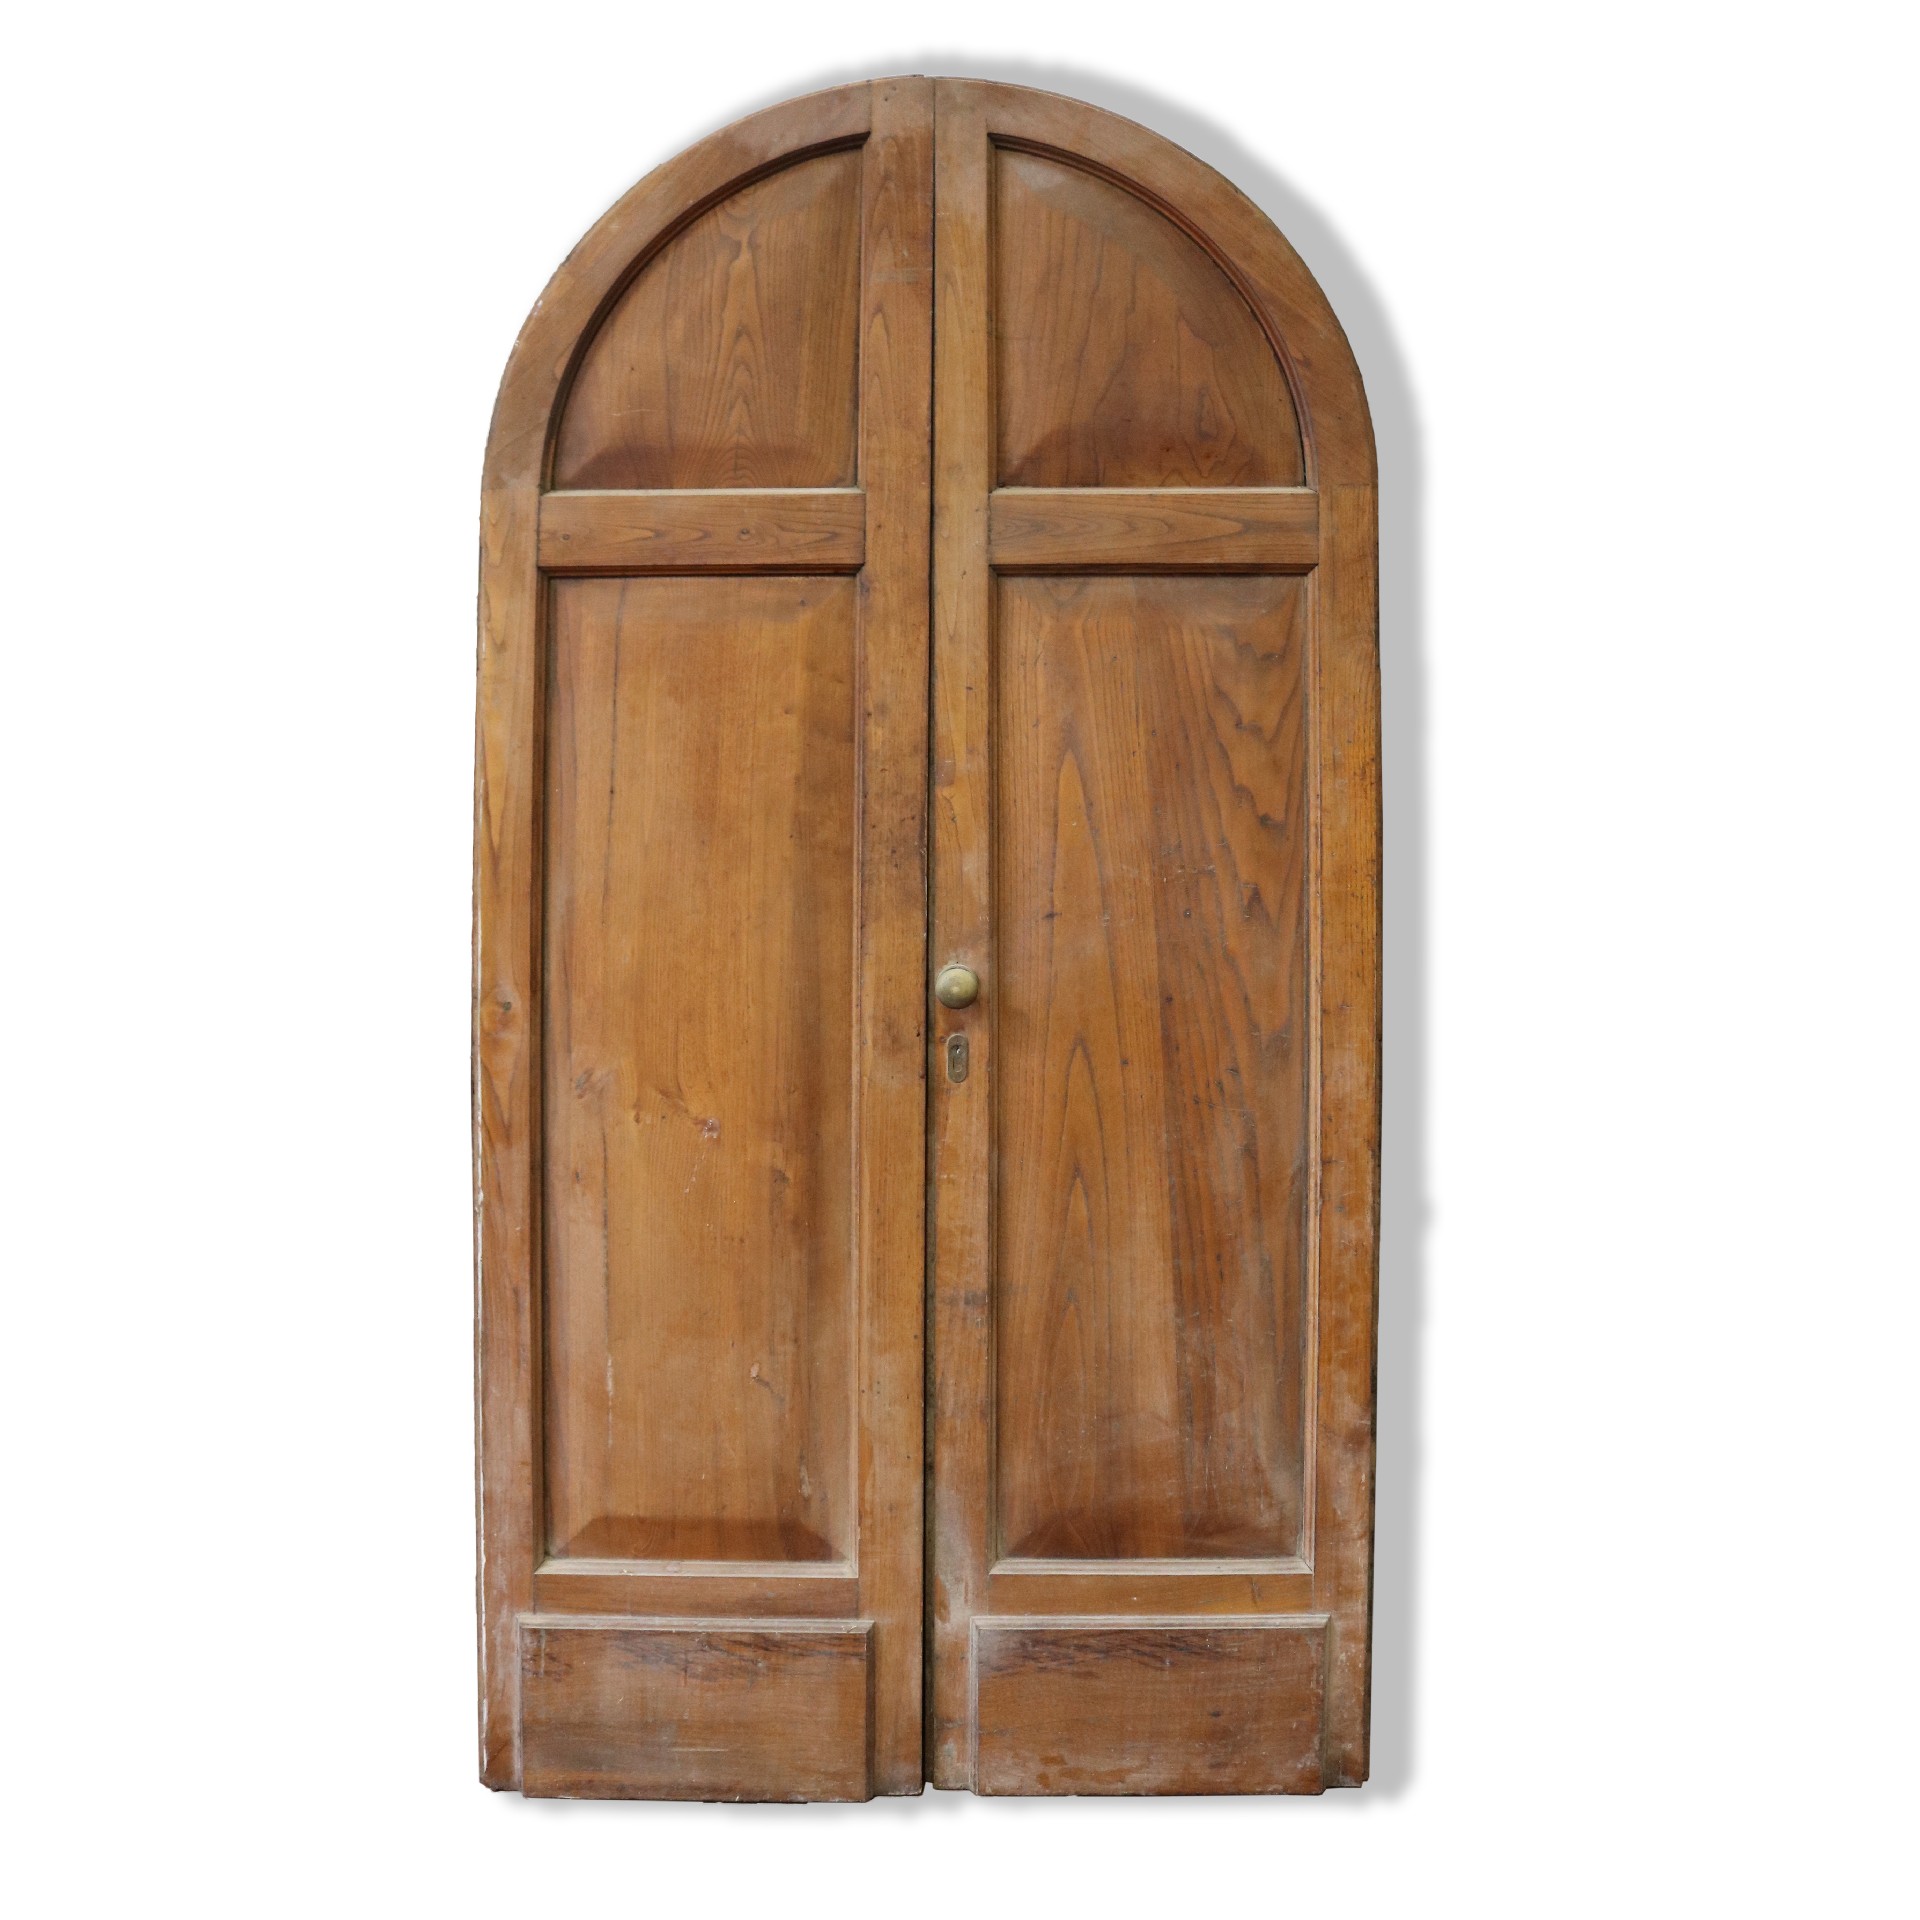 Antica porta in legno. - Porte in Legno - Porte Antiche - Prodotti - Antichità Fiorillo